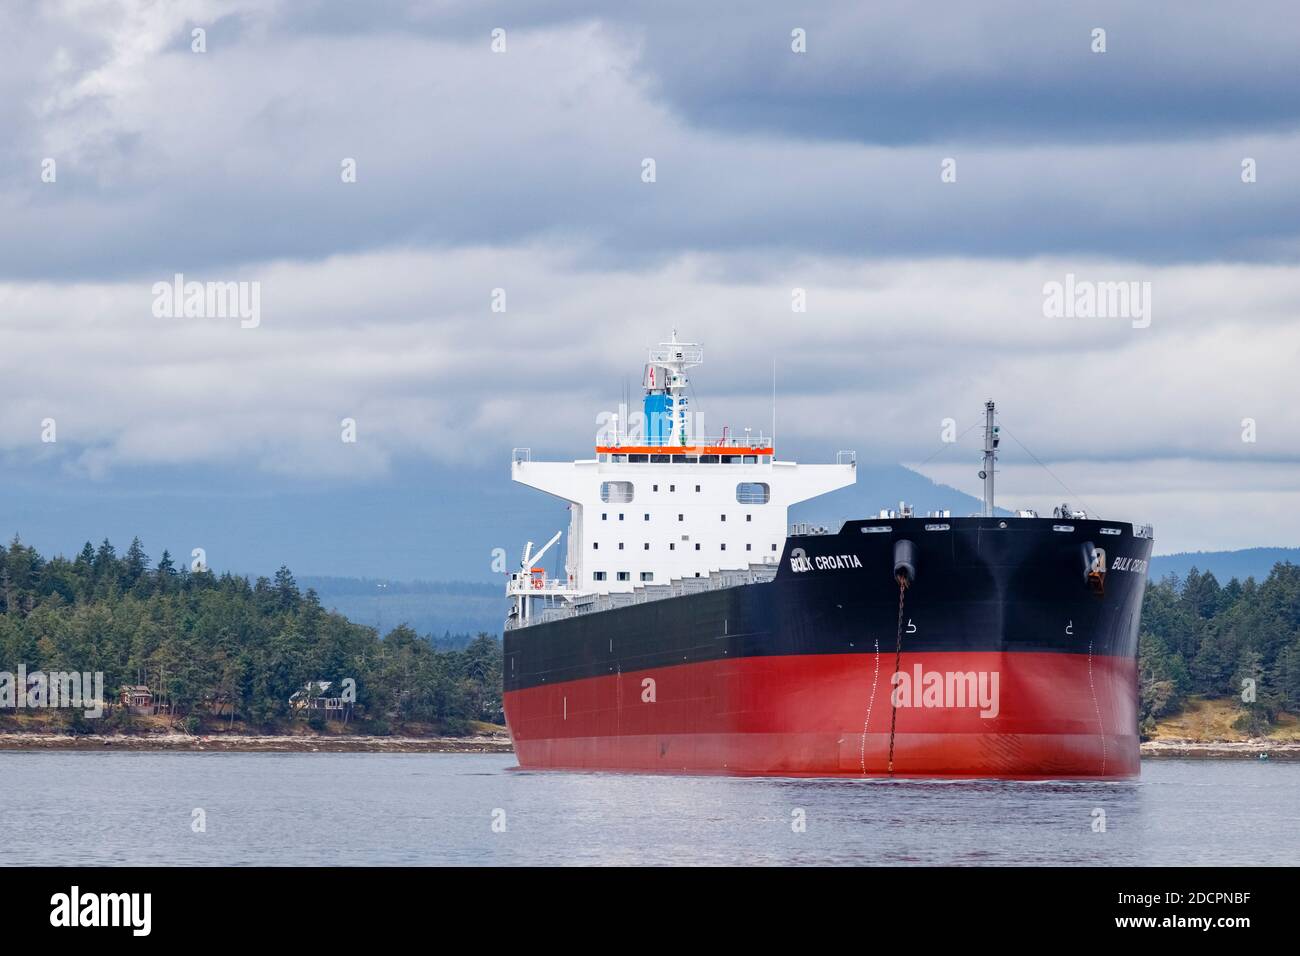 Anclado justo al lado de la isla de Thetis, BC, el carguero de 228 metros de largo 'Bulk Croatia' se eleva sobre la costa, desatando la ira y la controversia local. Foto de stock